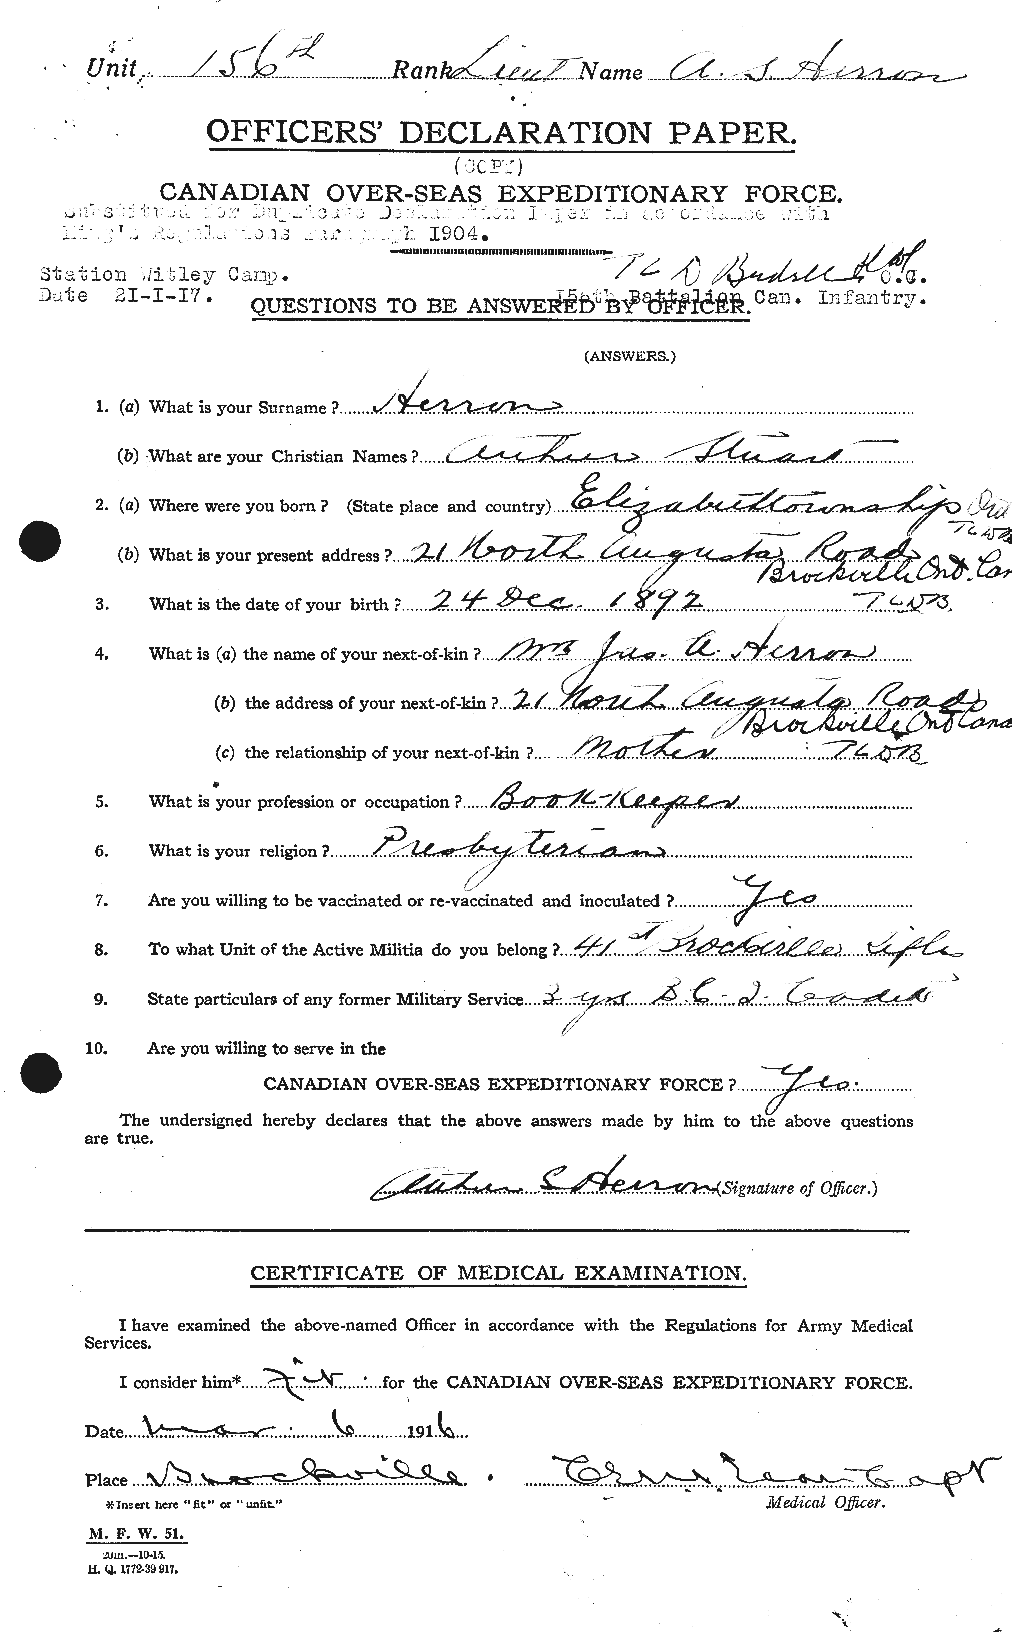 Dossiers du Personnel de la Première Guerre mondiale - CEC 388686a